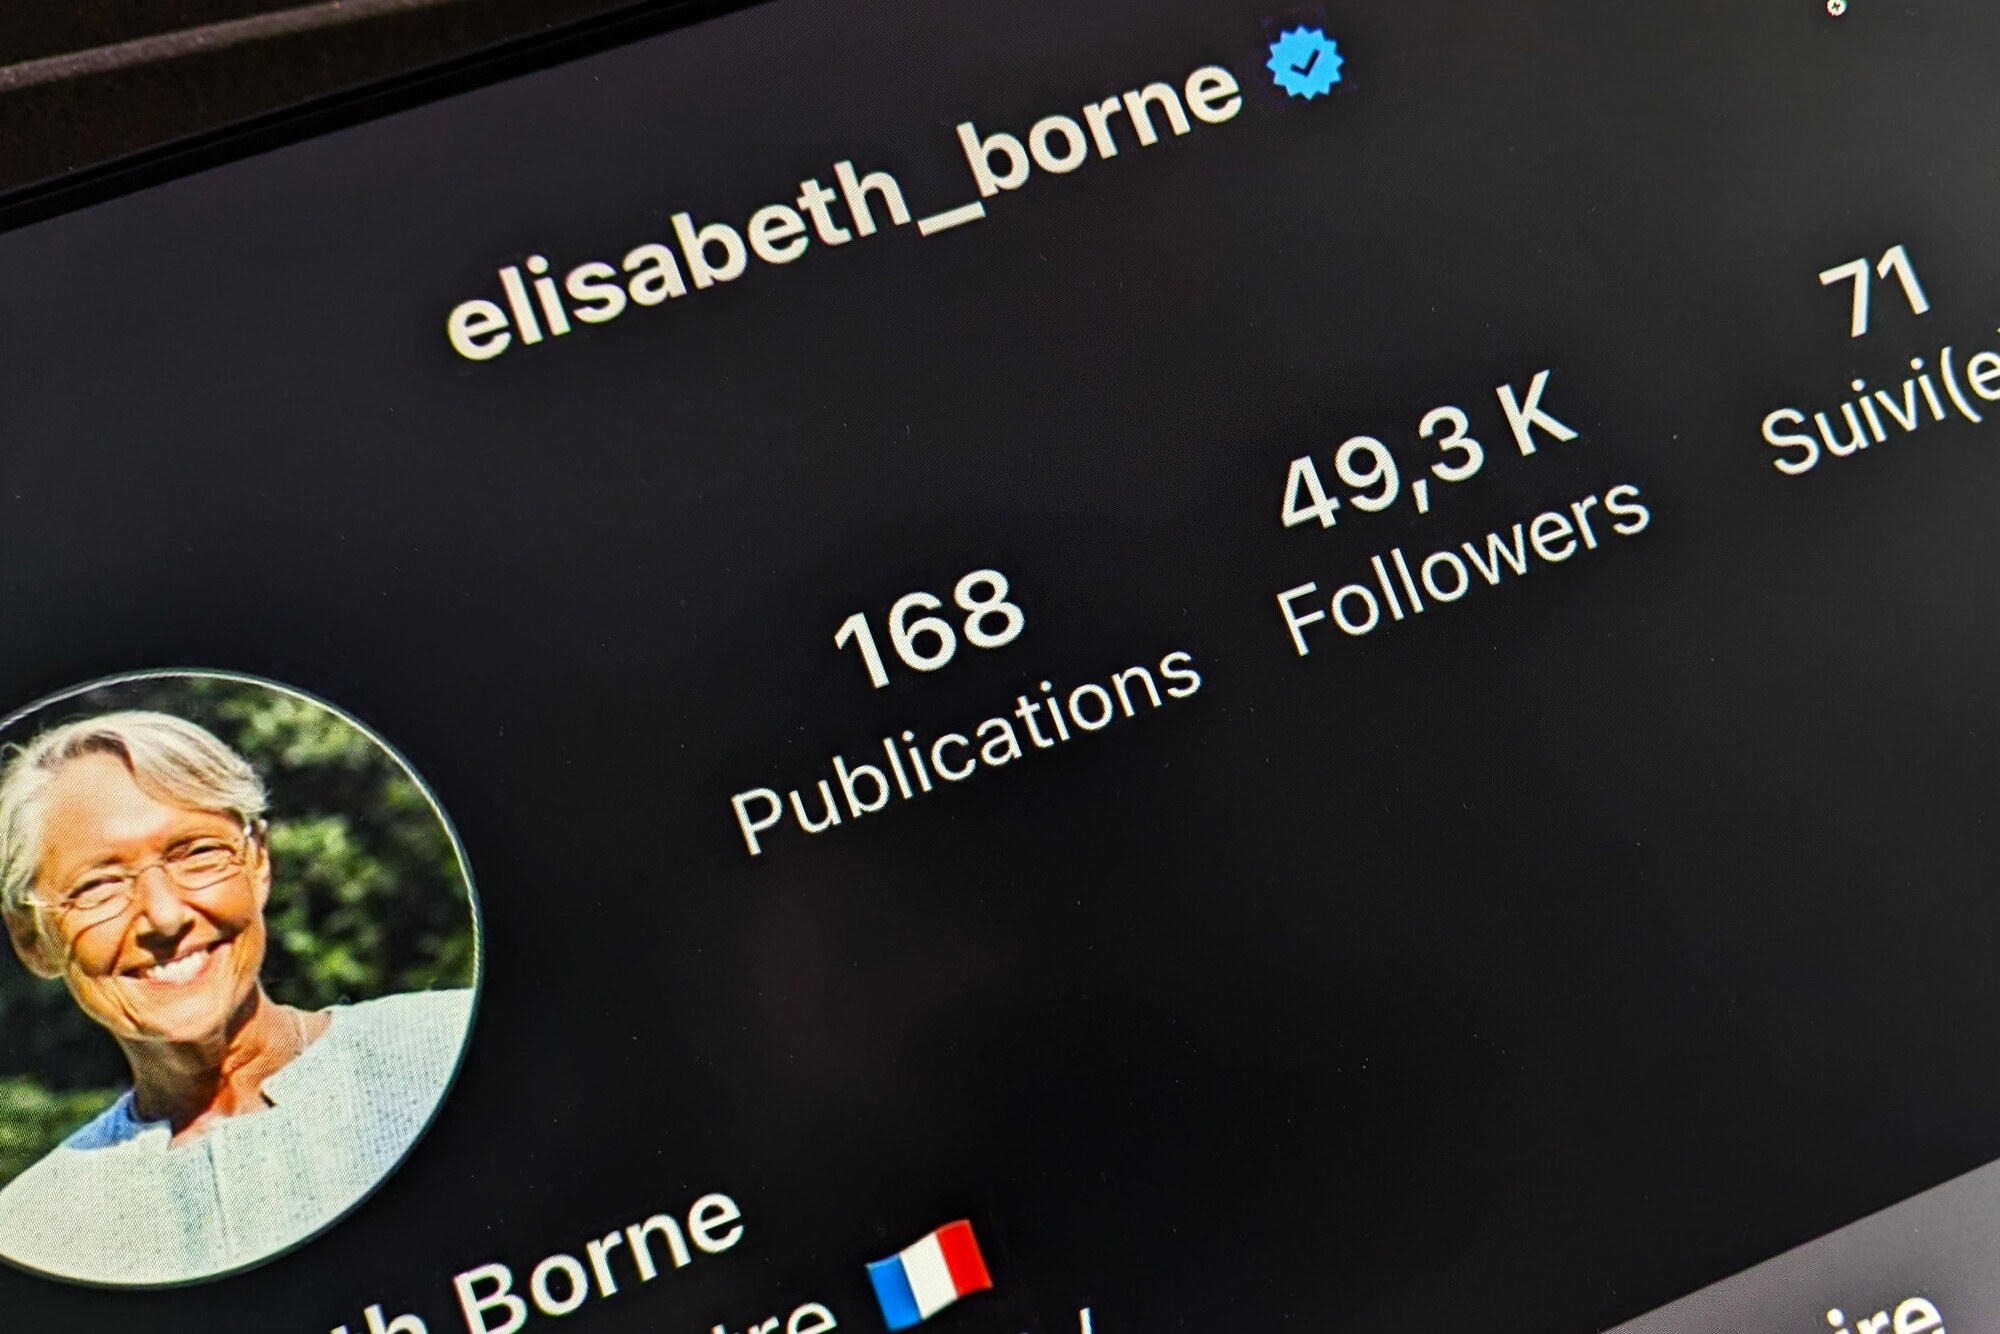 Le compte Instagram d'Élisabeth Borne a brièvement compté 49,3 K abonnés, très brièvement